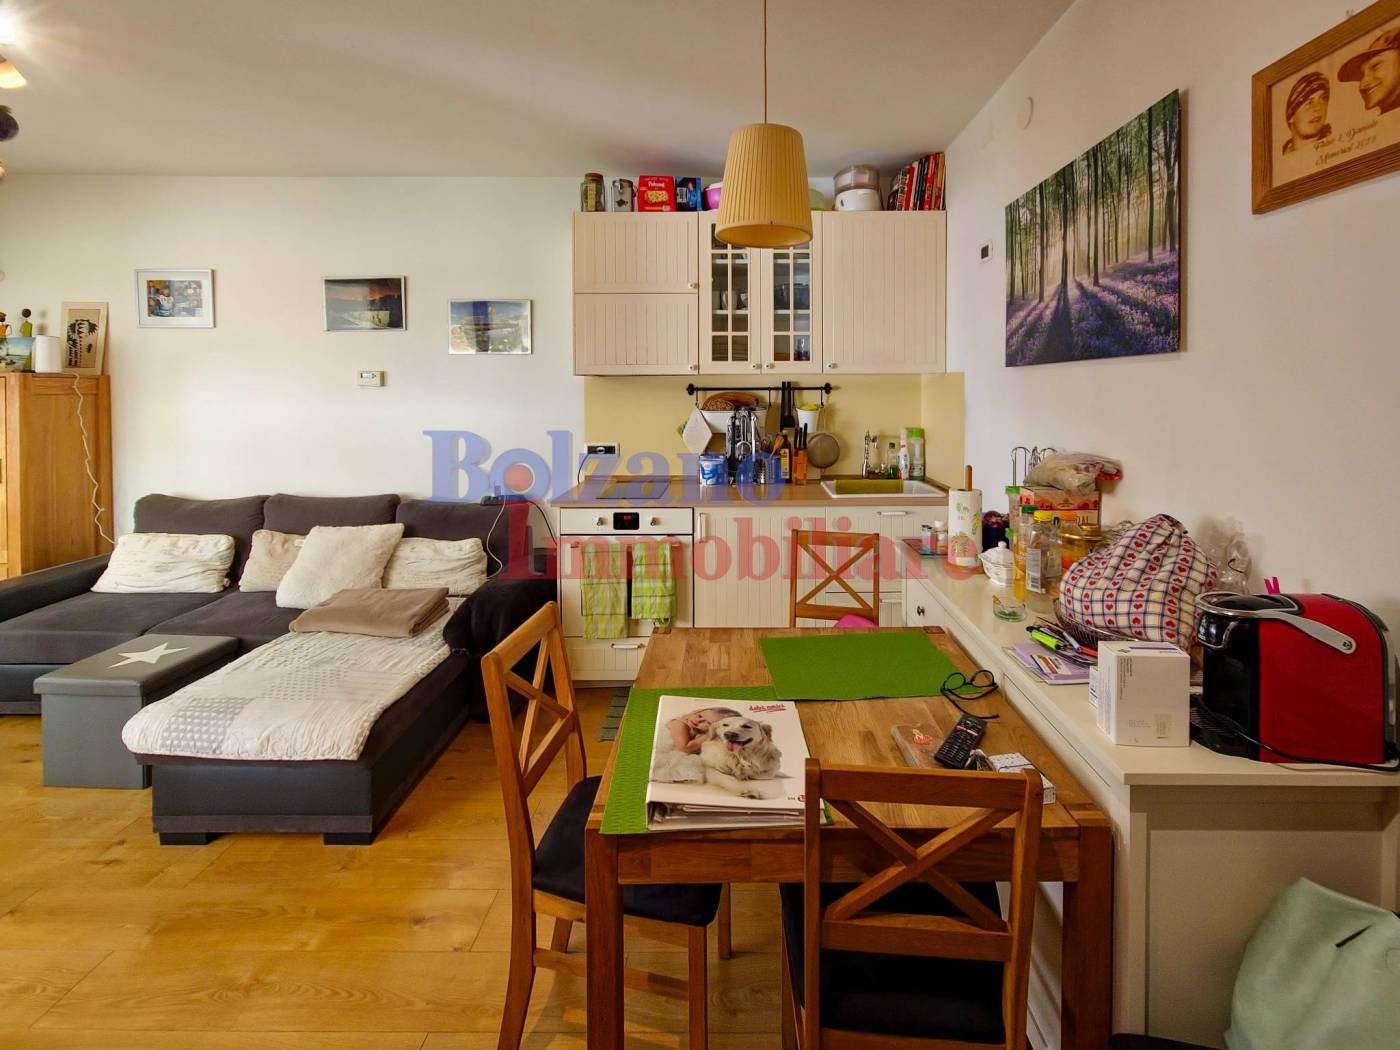 In vendita a Bolzano un appartamento bilocale moderno di 54mq, arricchito da un spazioso balcone perimetrale, molto accogliente e luminoso. Primo 